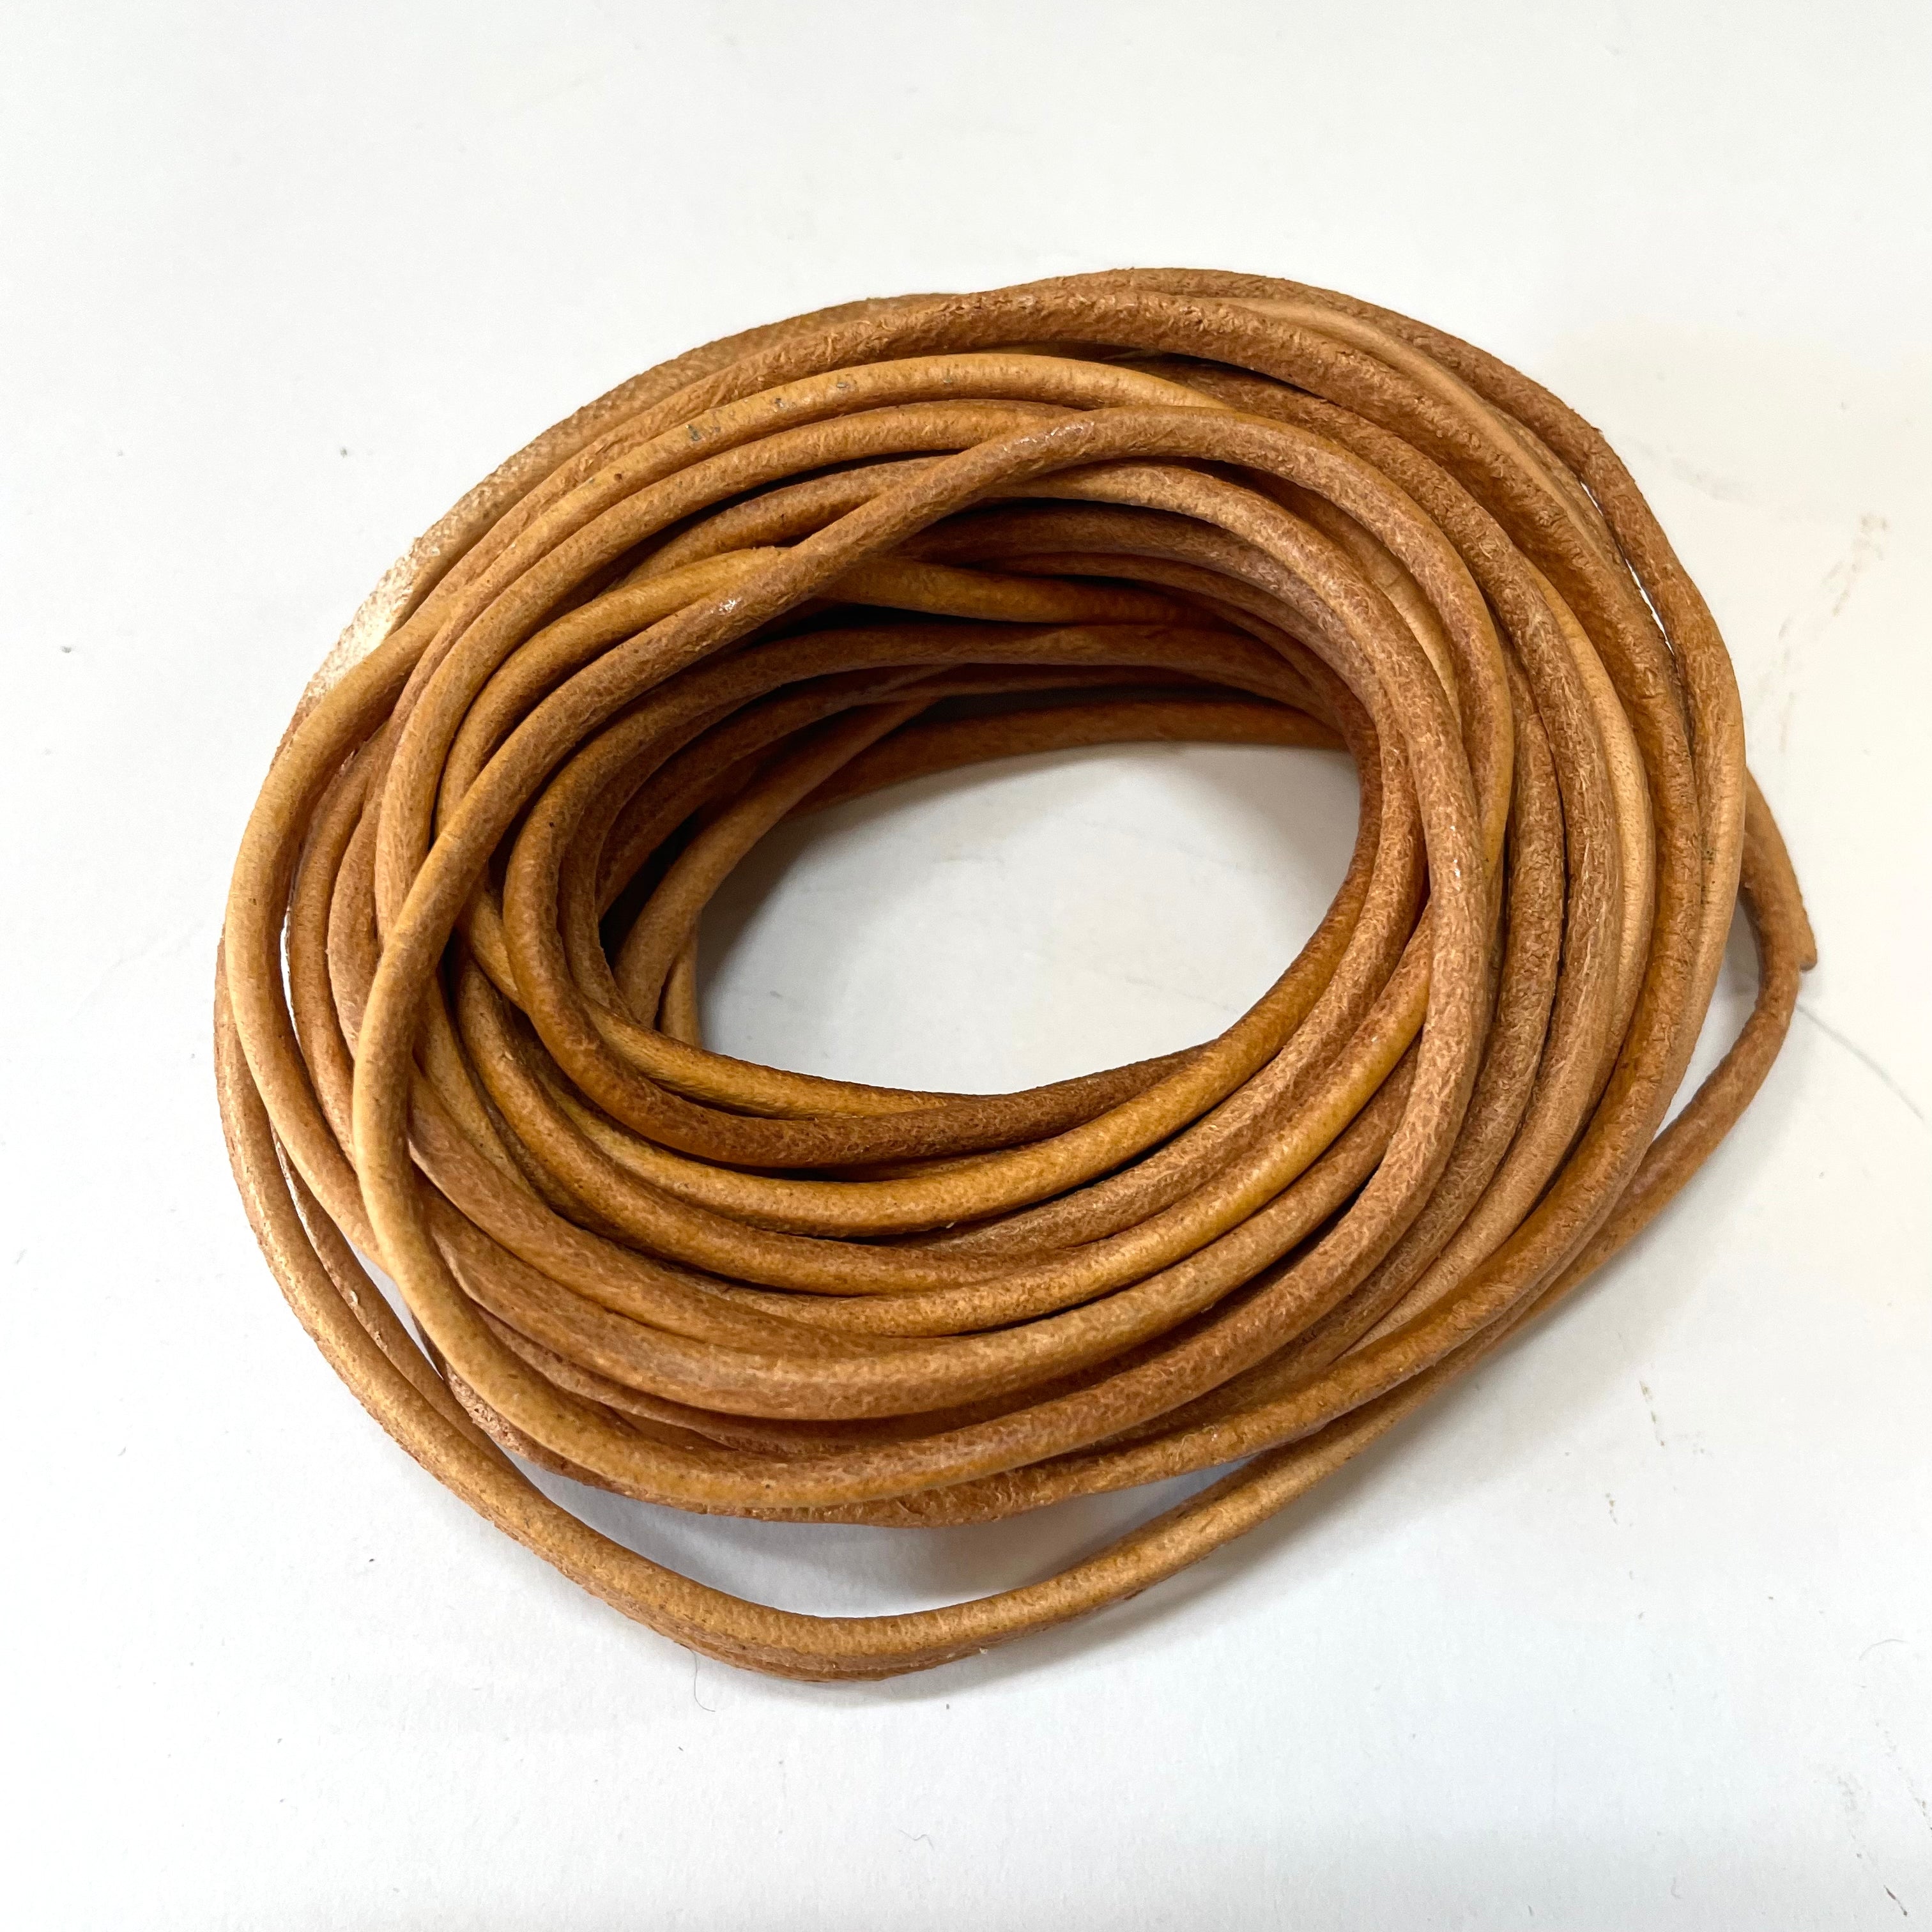 Natural Genuine Leather Cord per 10 Yards - Natural Tan Brown 3mm